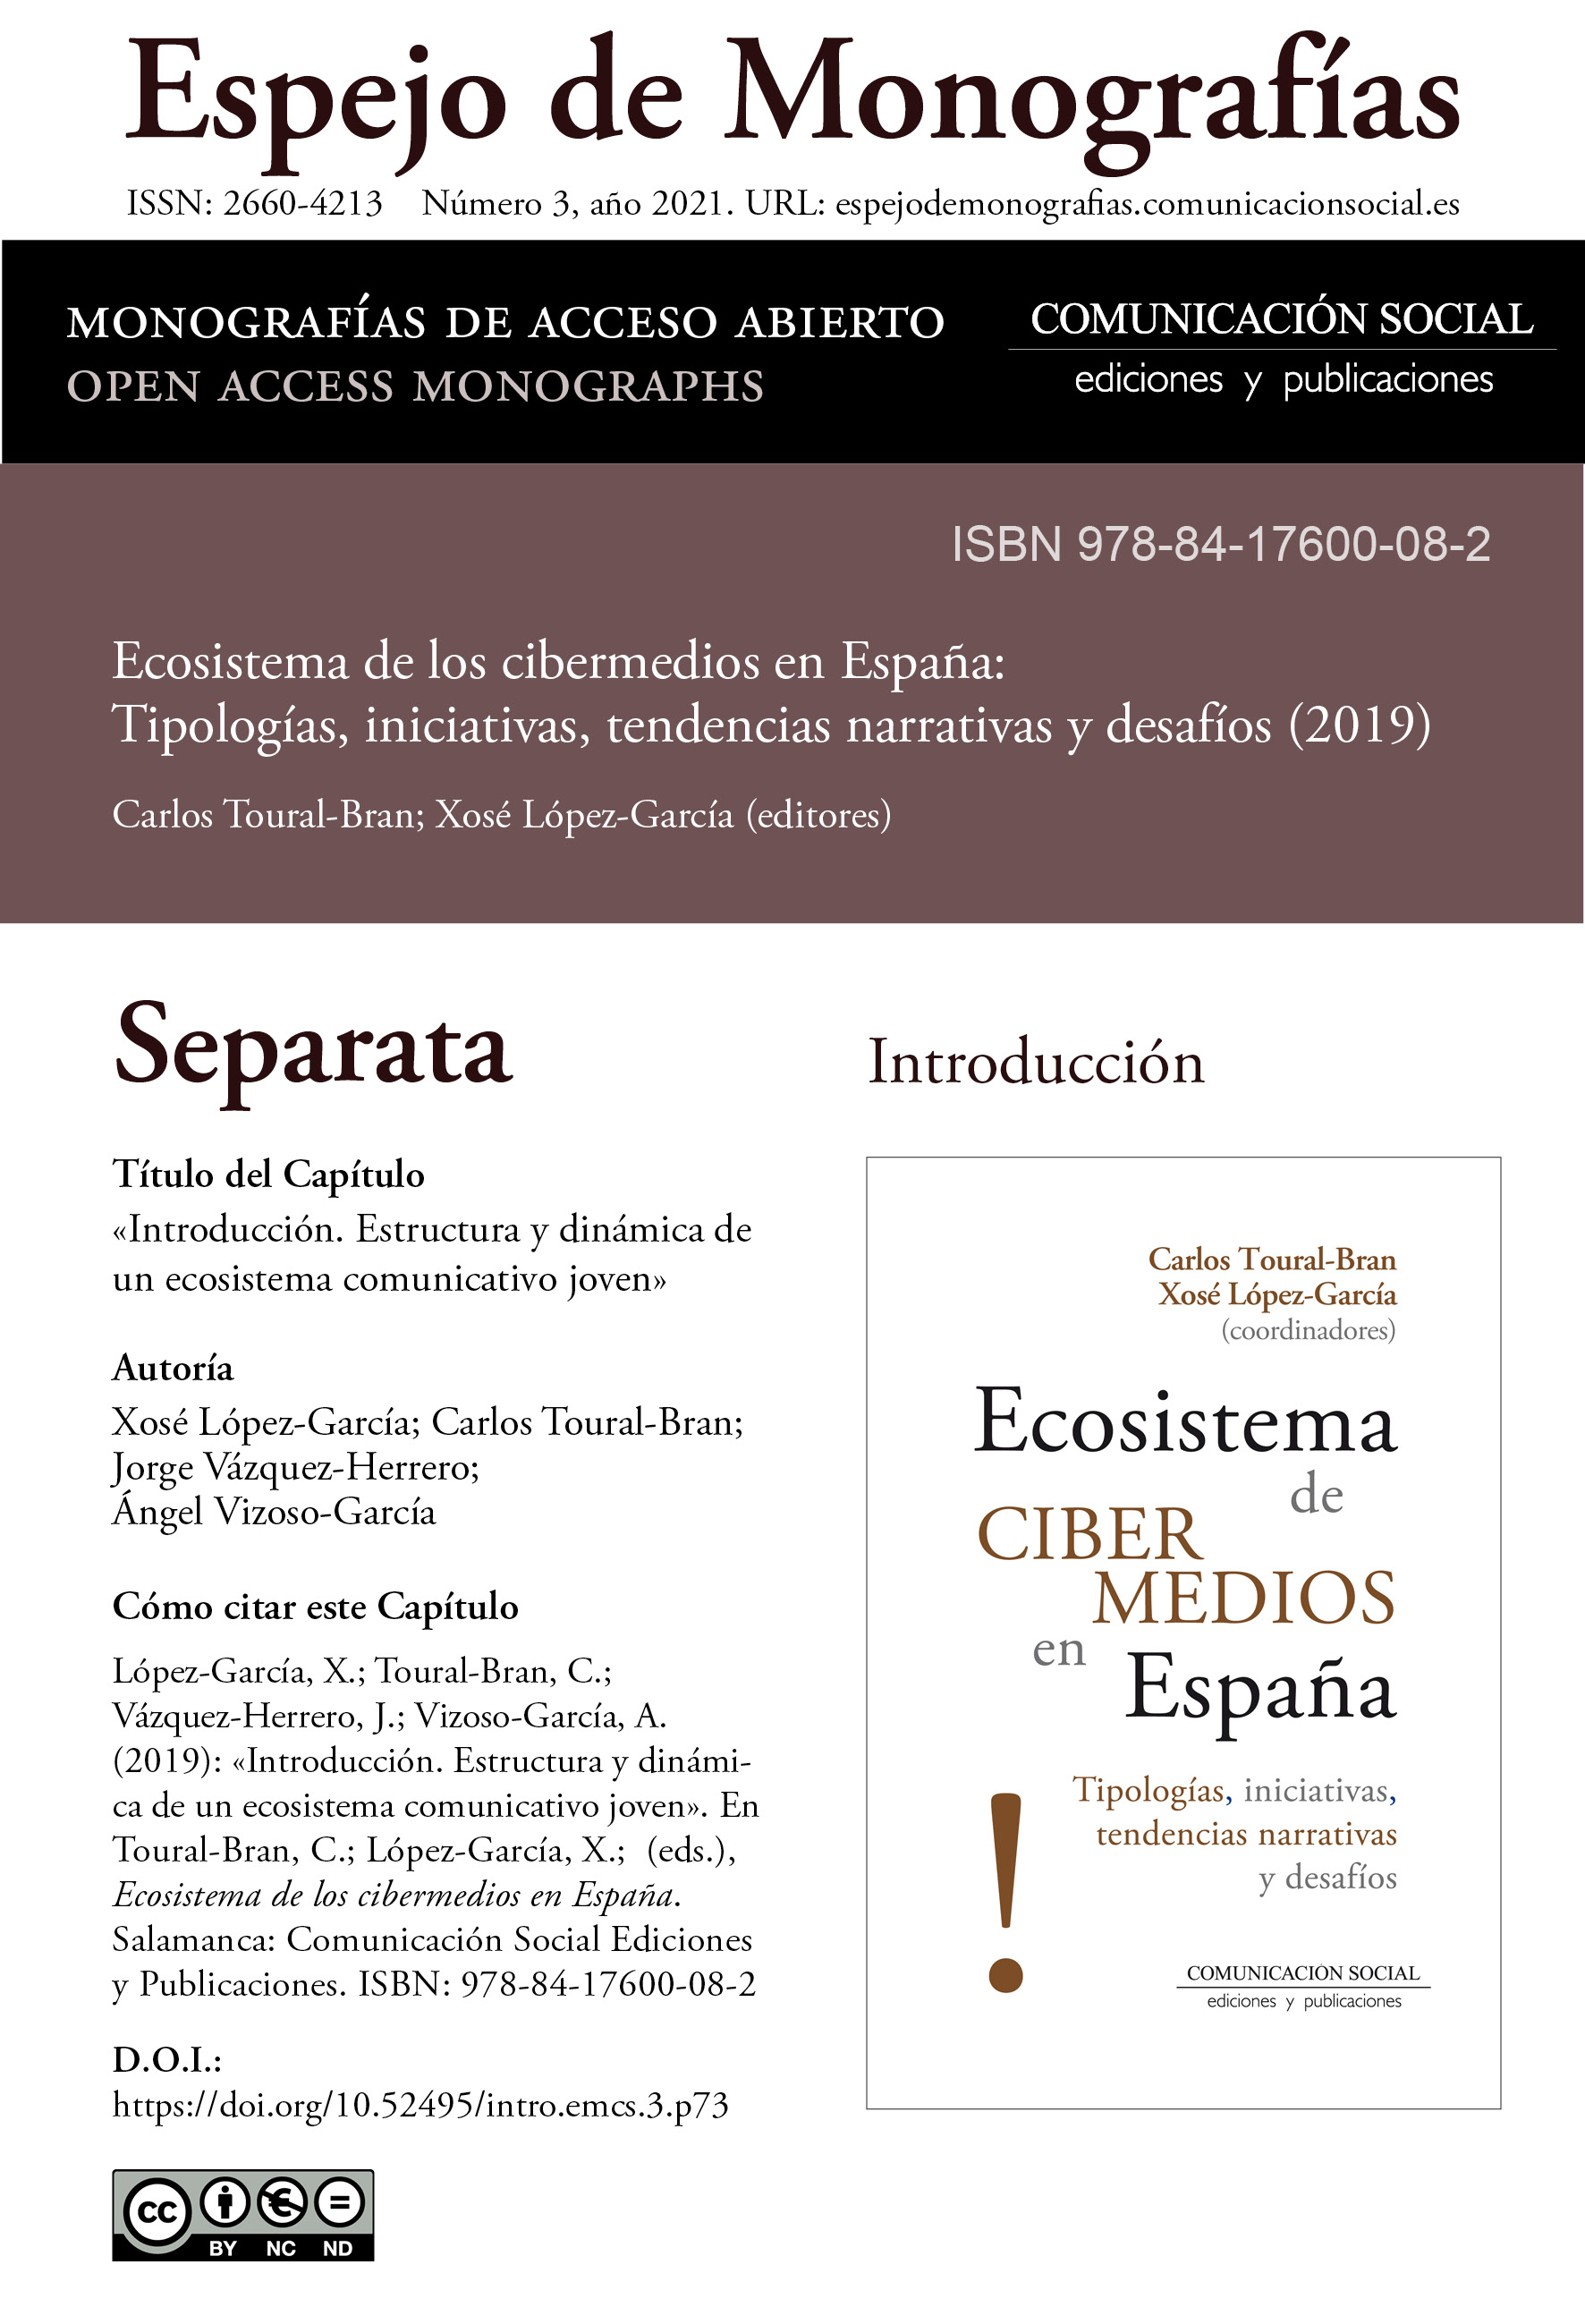 Separata de la Introducción correspondiente a la monografía Ecosistema de cibermedios en España